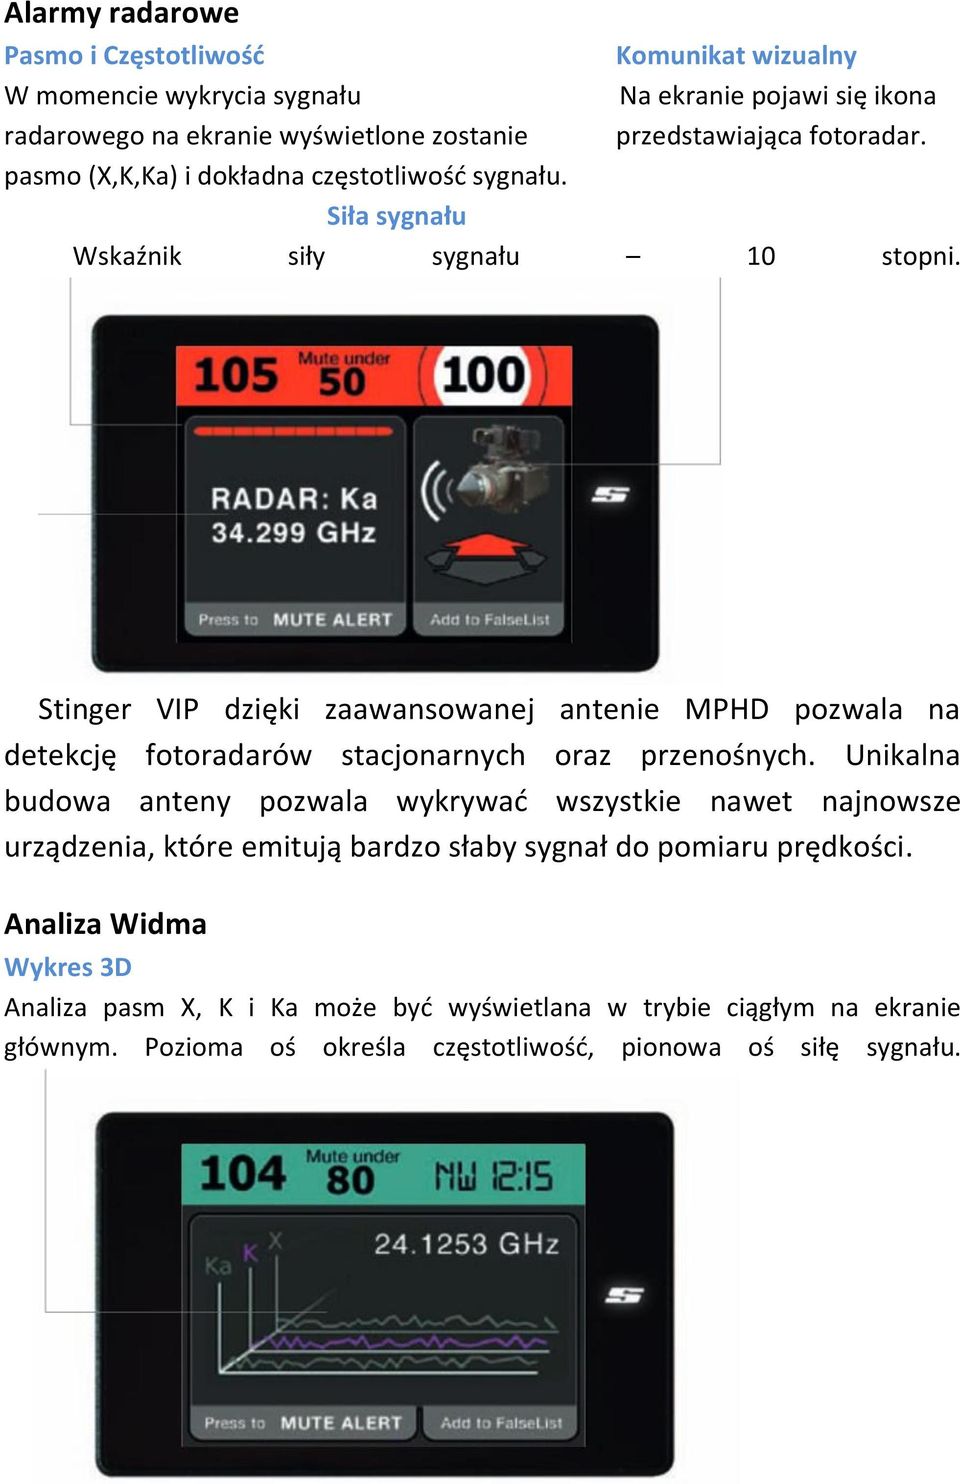 Stinger VIP dzięki zaawansowanej antenie MPHD pozwala na detekcję fotoradarów stacjonarnych oraz przenośnych.